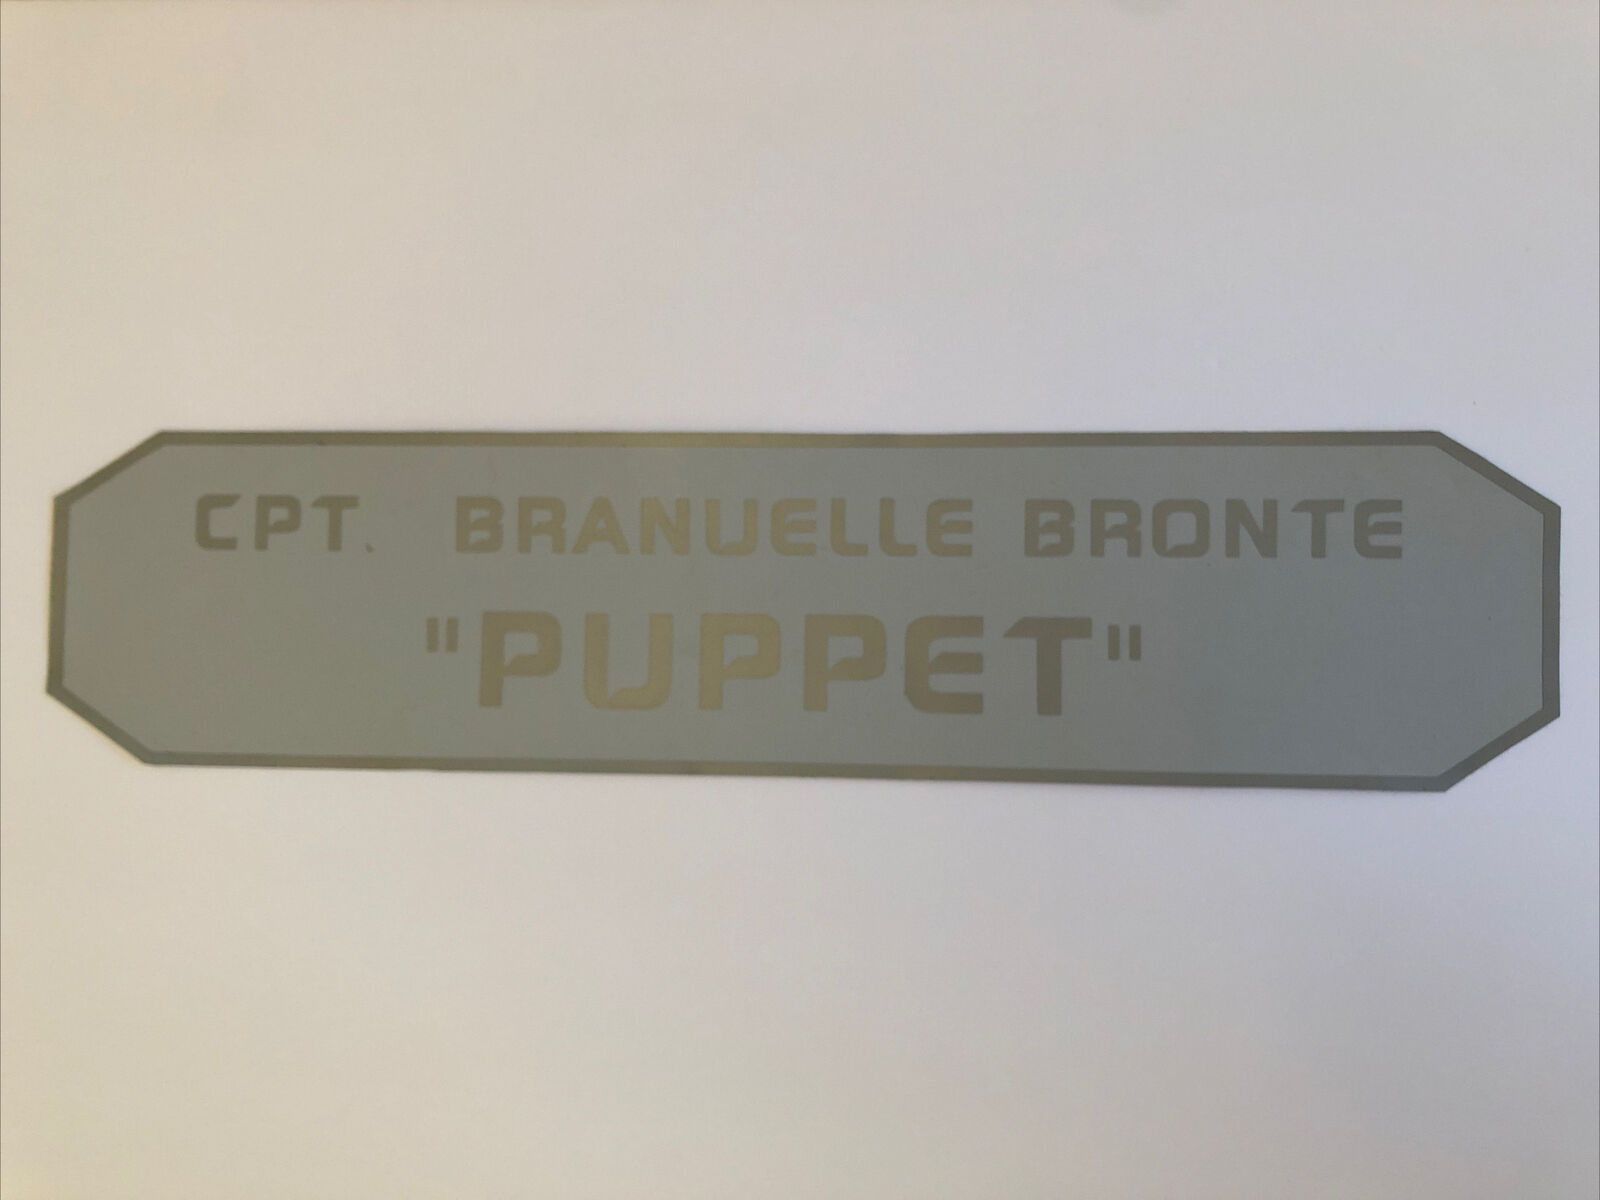 Battlestar Galactica “puppet” Prop Nameplate